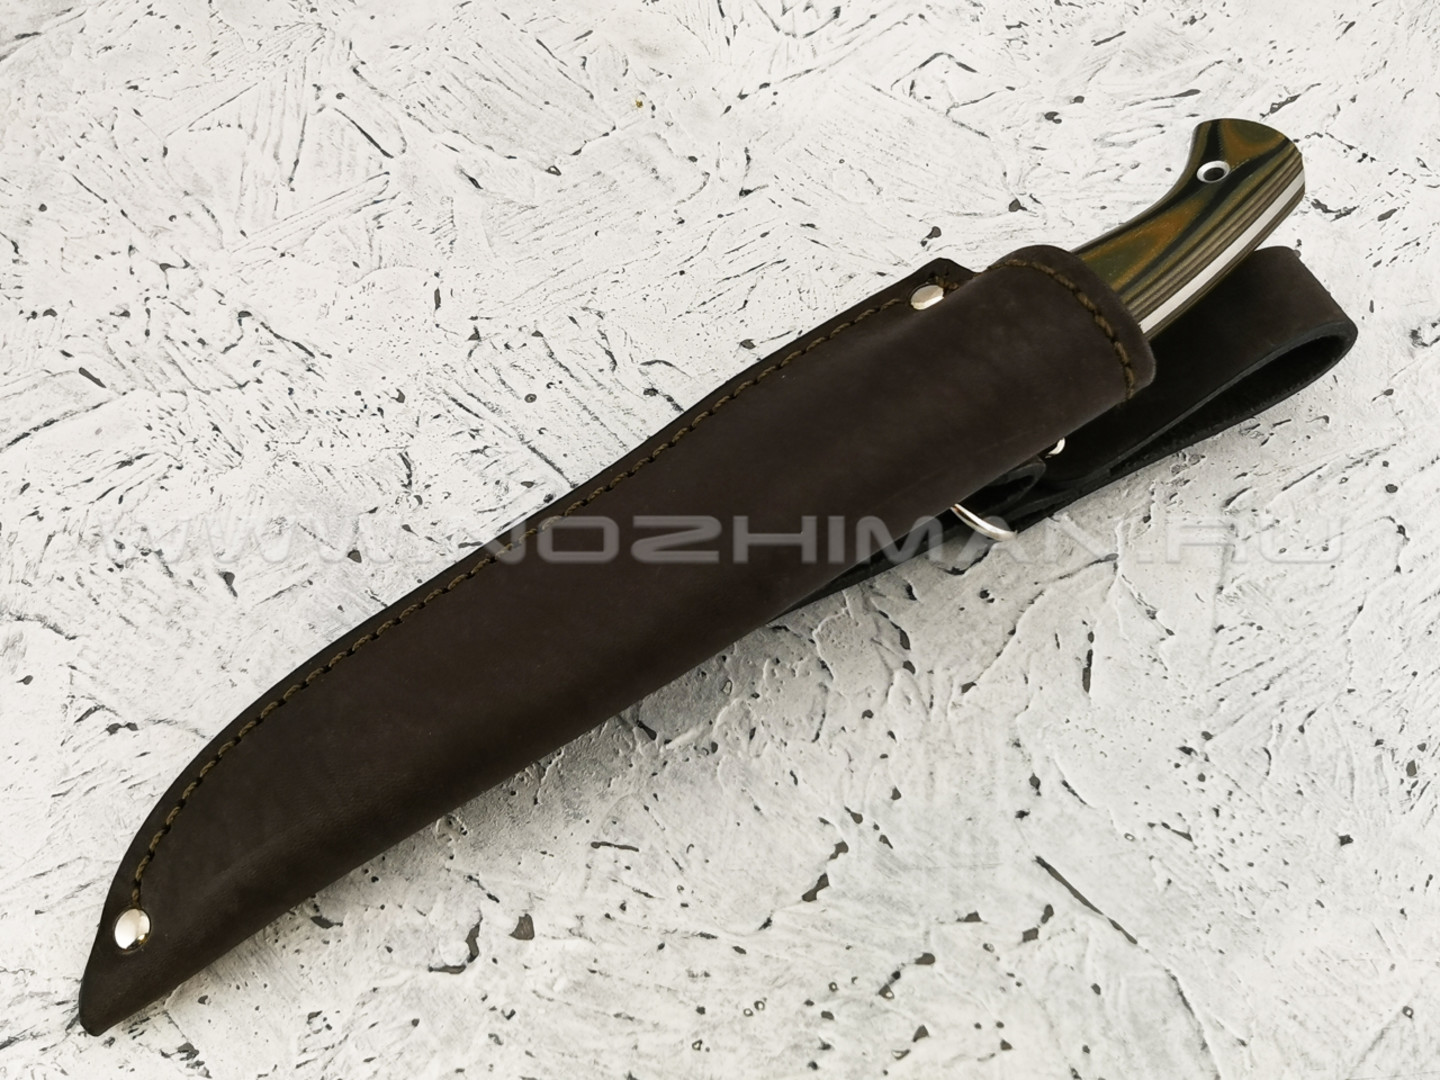 Нож "Клык" сталь D3, рукоять G10 (Федотов А. В.) 011ДЭ28